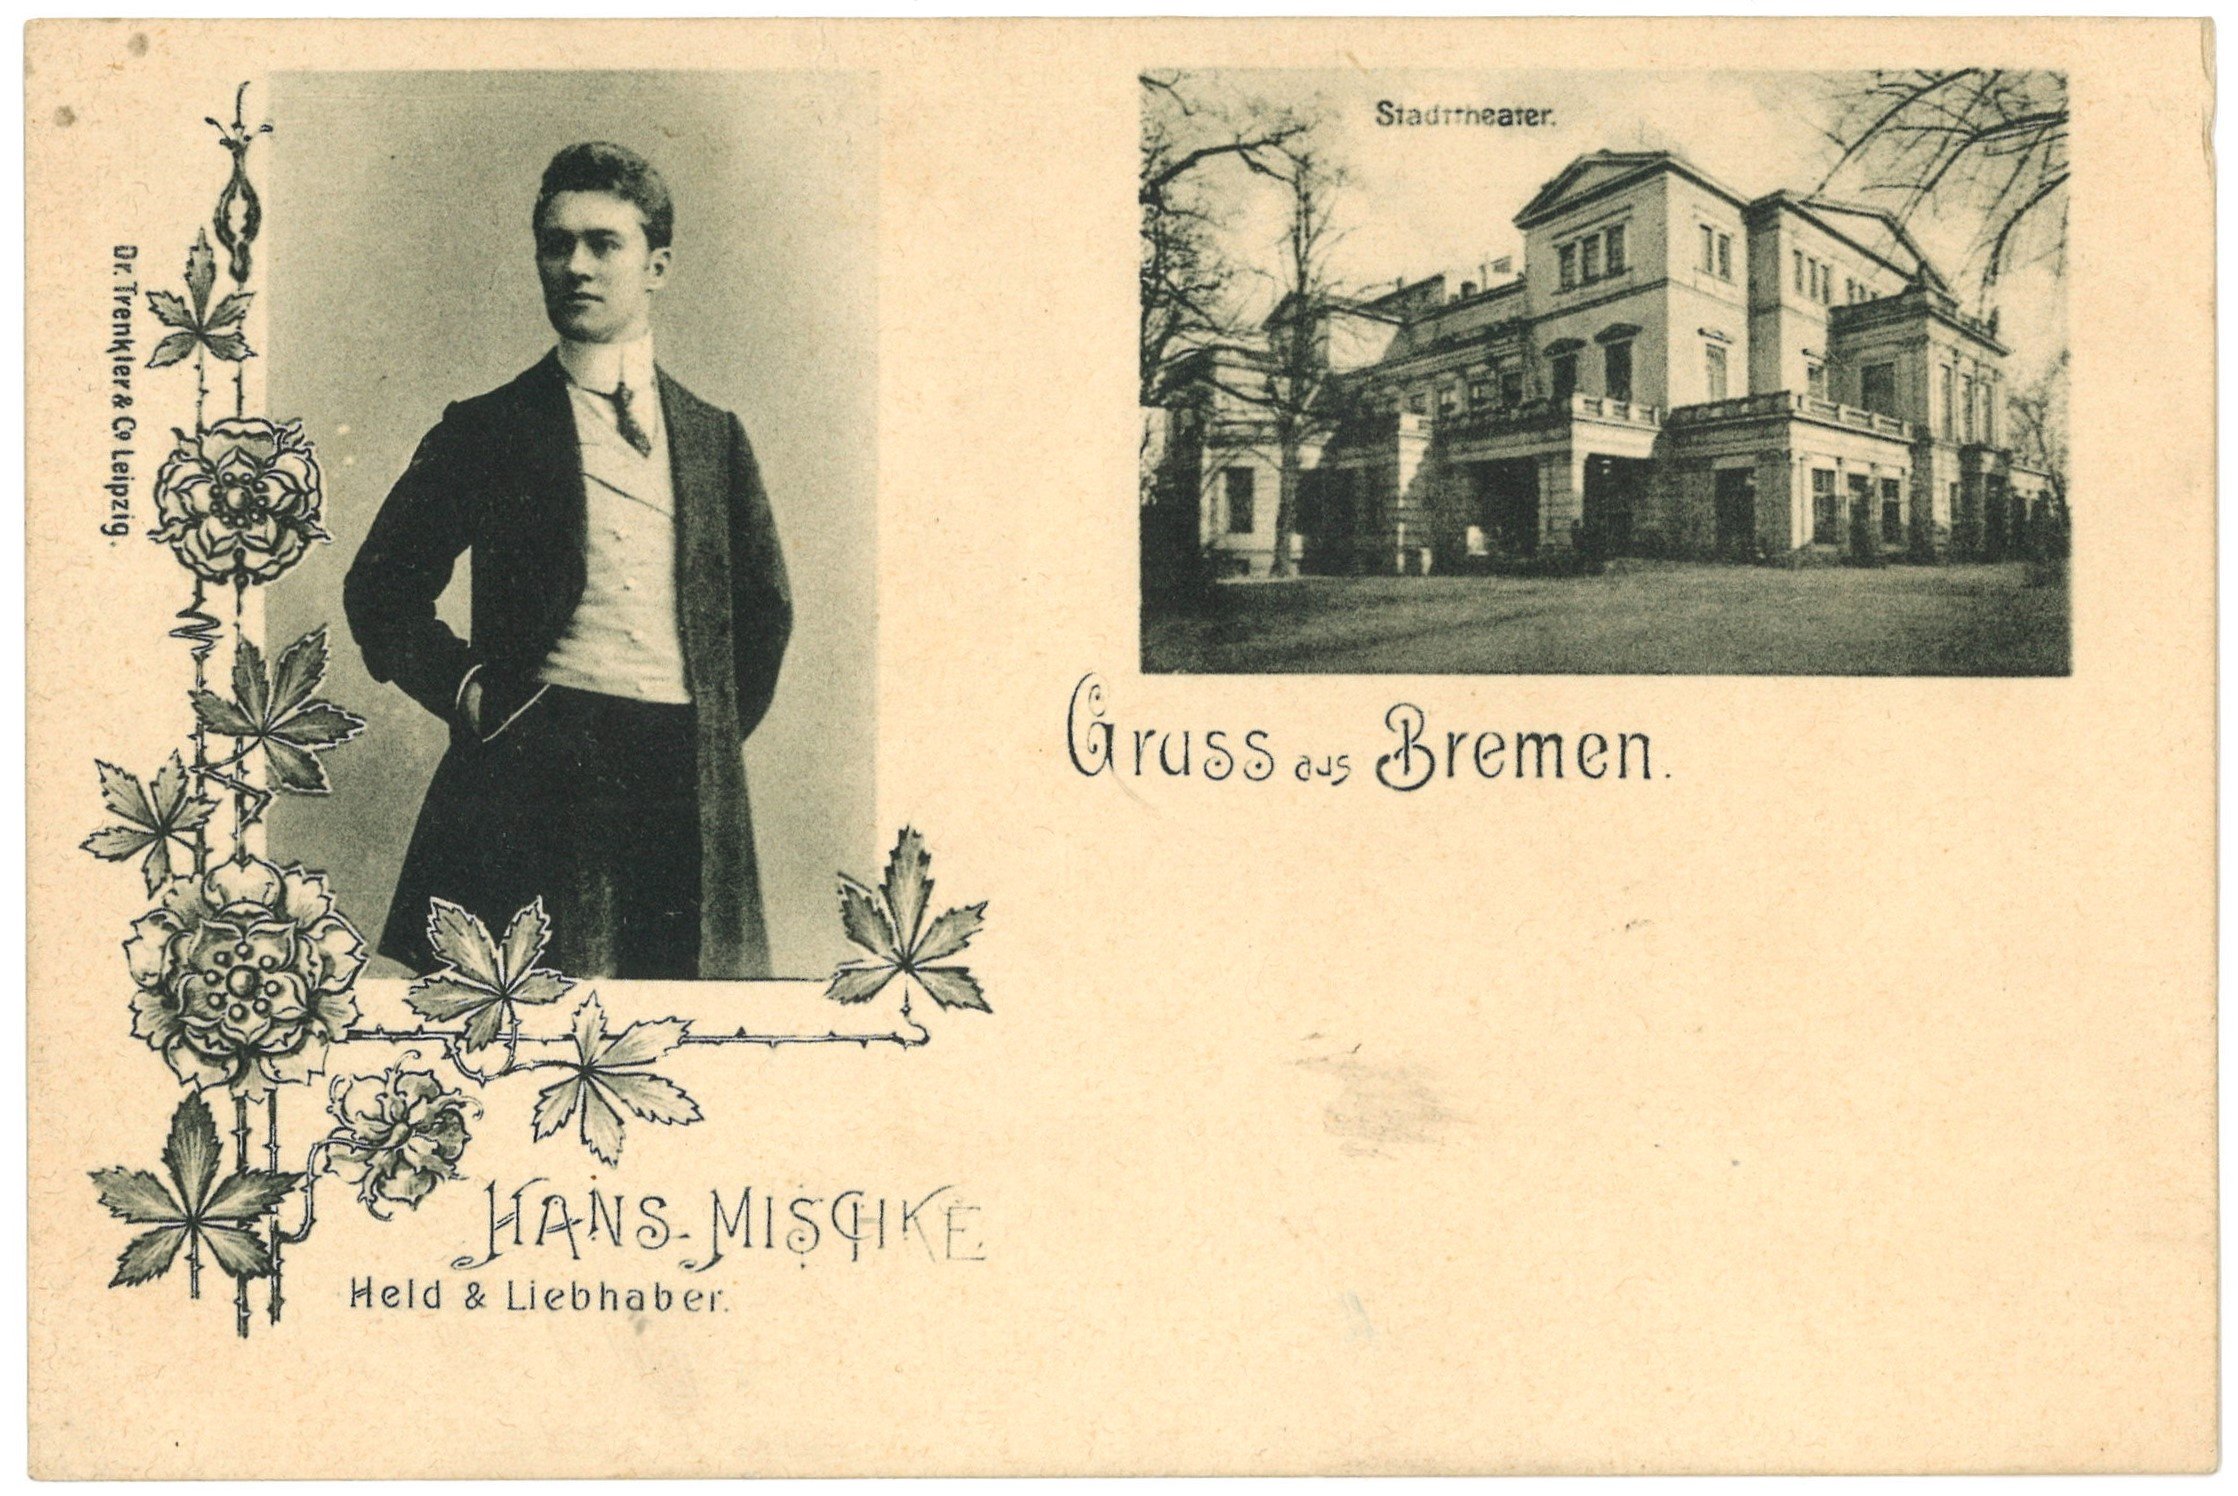 Mischke, Hans (1869–1907), Schauspieler (Landesgeschichtliche Vereinigung für die Mark Brandenburg e.V. CC BY)